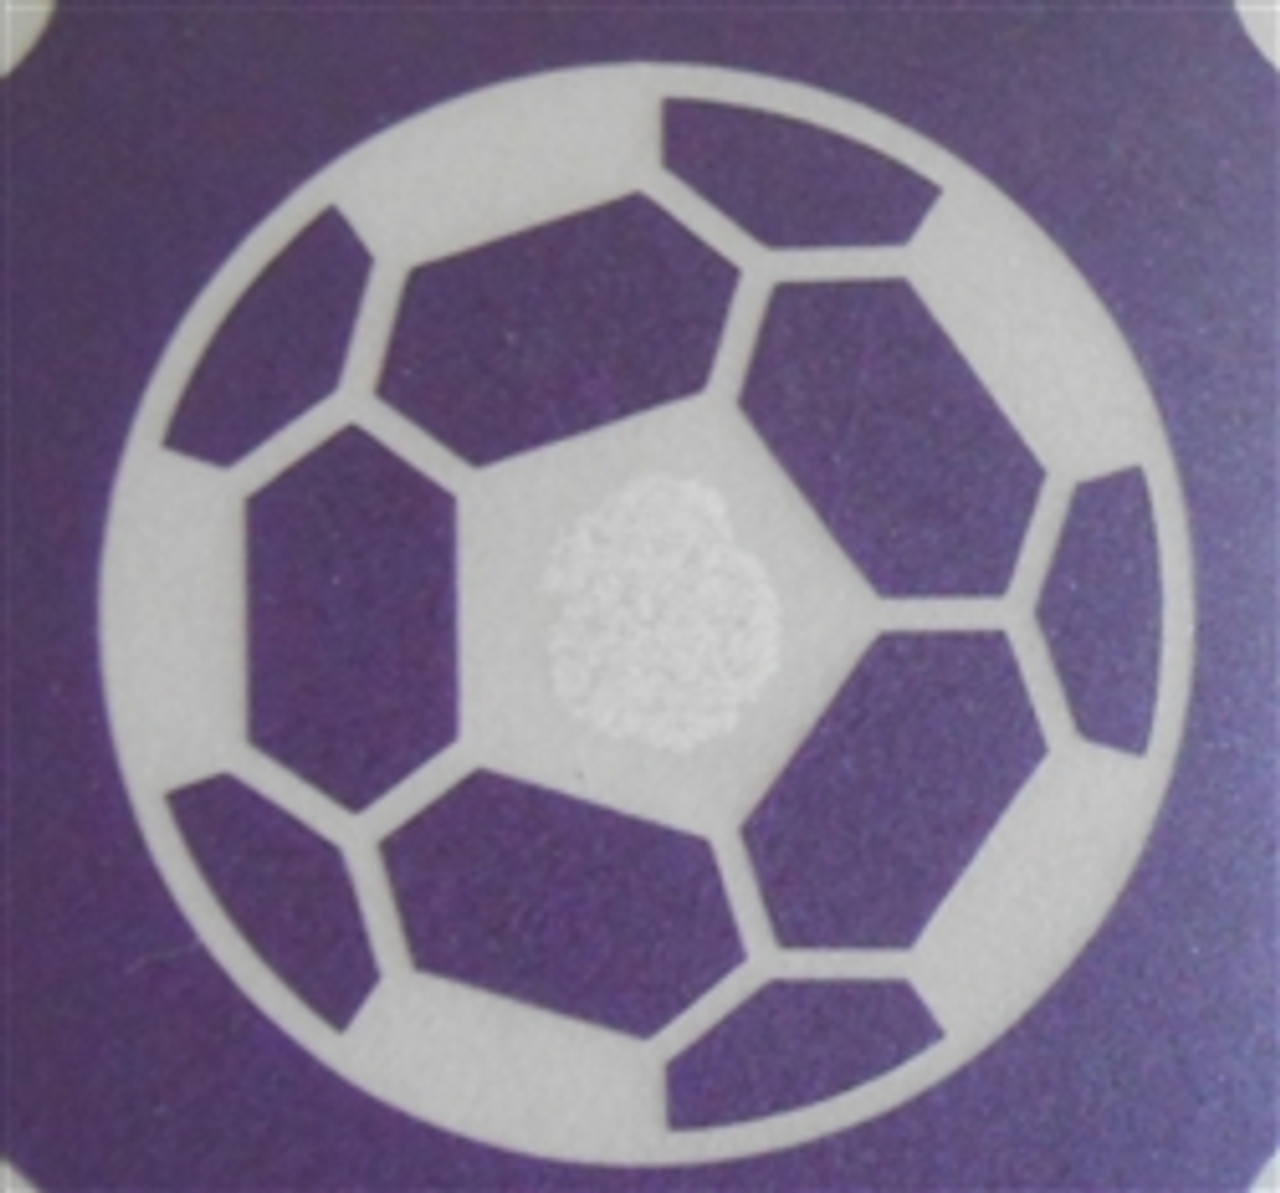 Soccerball - 3 Layer Stencil